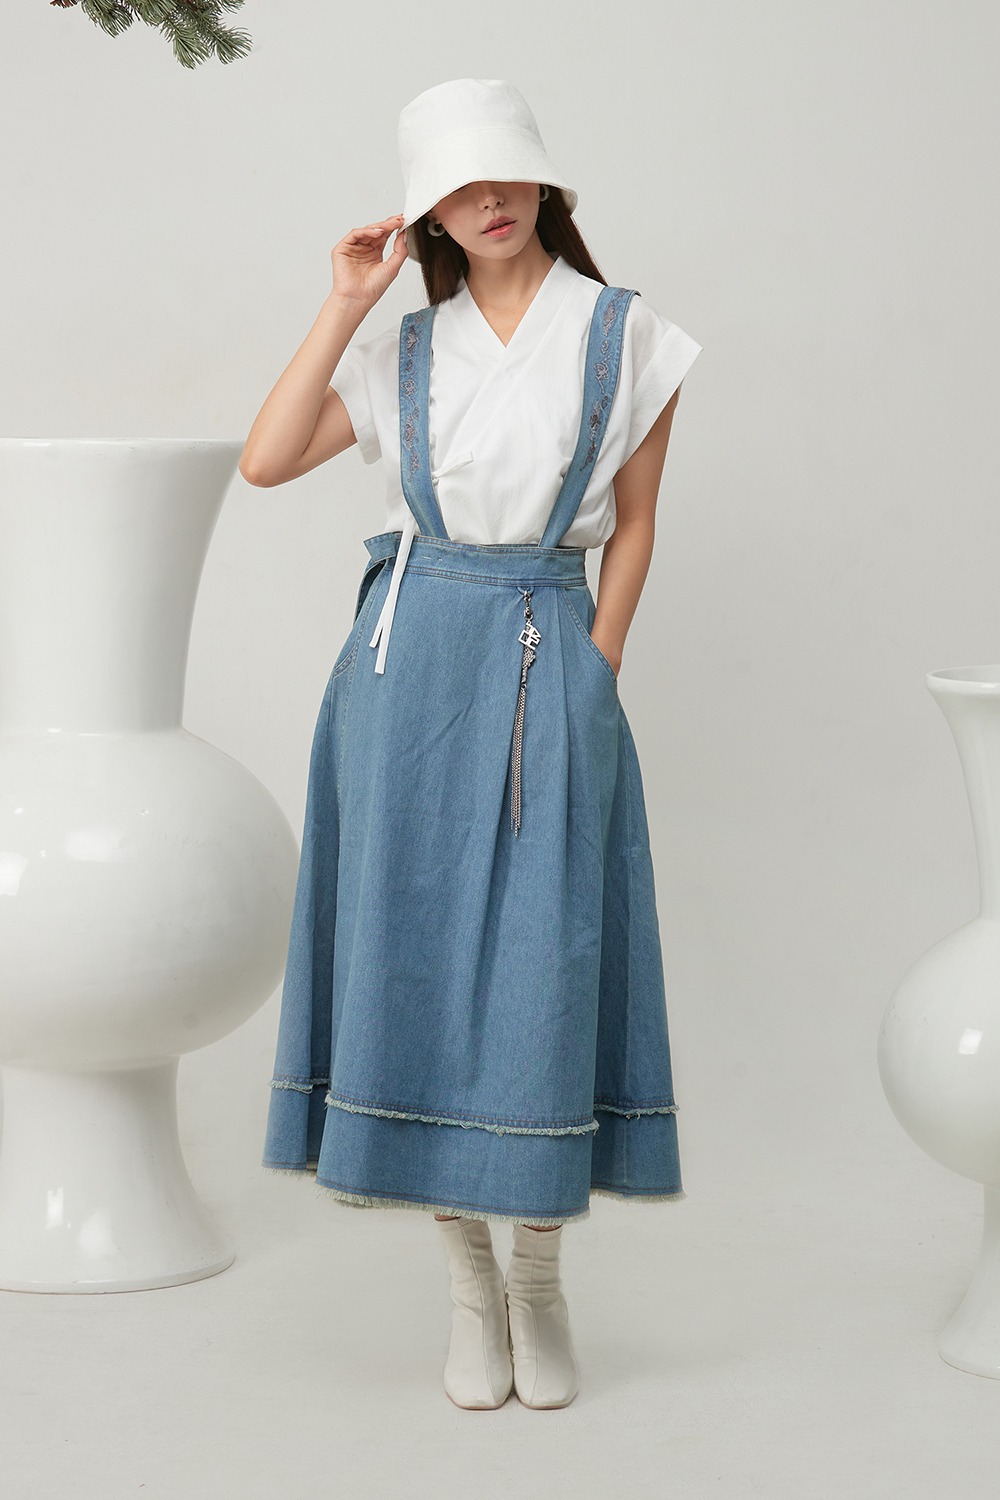 Un Hak Hanbok Jean Skirt [Blue] Pre-order